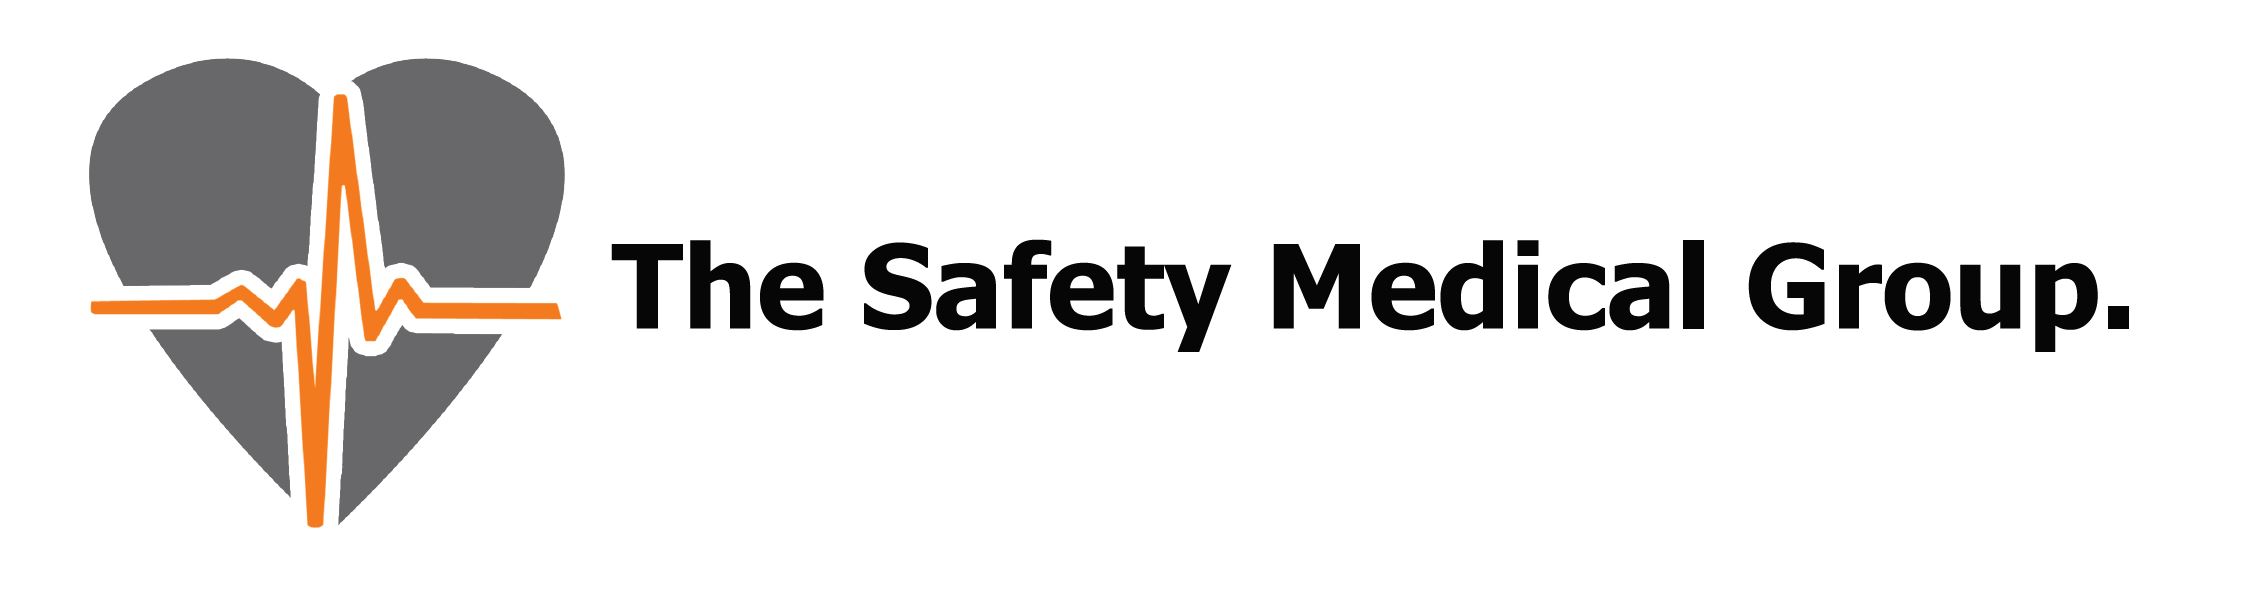 logo for Safety Medical Group Ltd